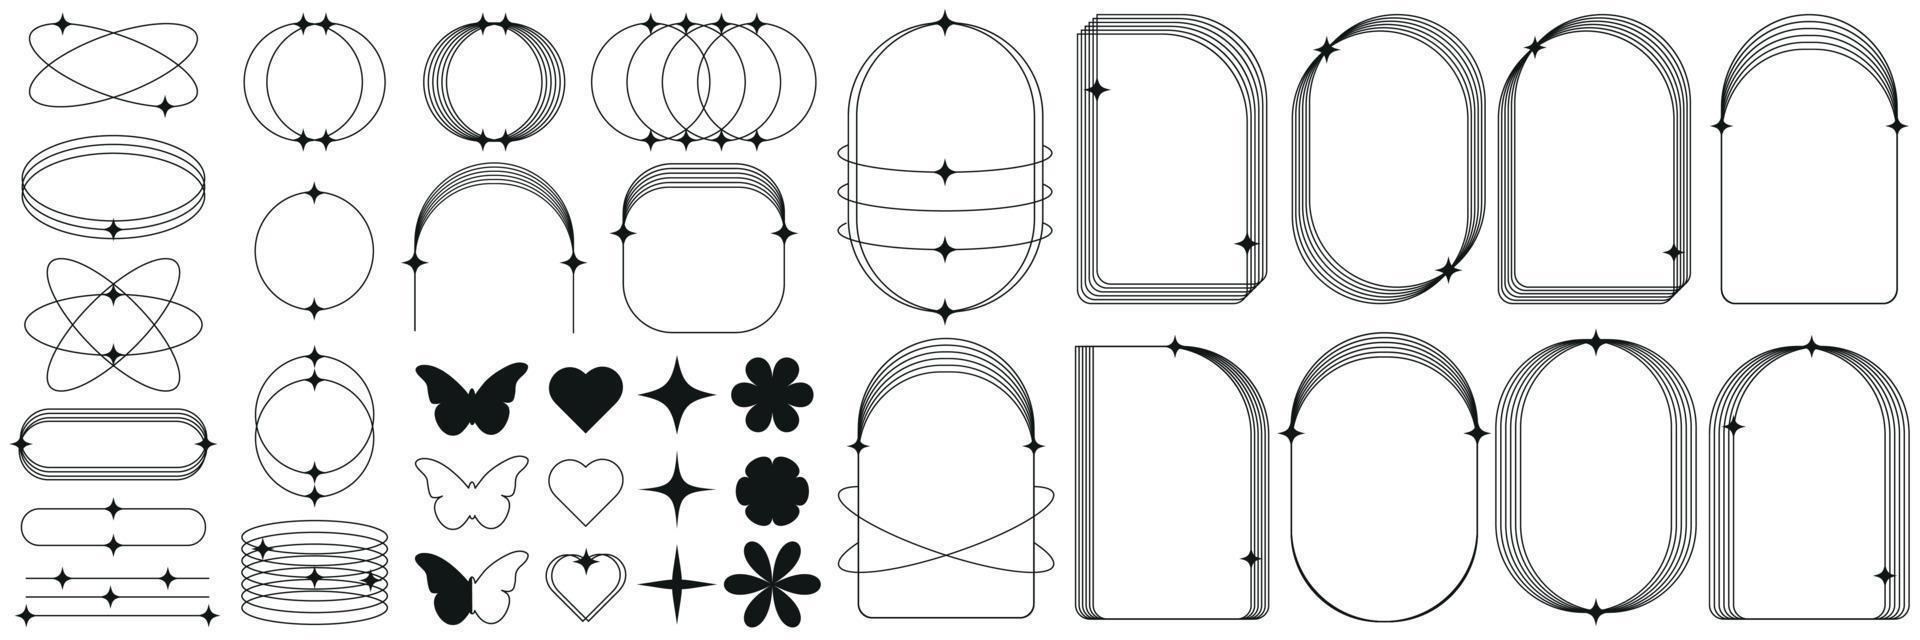 un conjunto de geométrico formas, marcos, corazones, mariposas, flores, formas en un de moda retro estilo de el años 2000 moderno minimalista arqueado marco con lentejuelas de moda diseño elementos para pancartas, social. vector